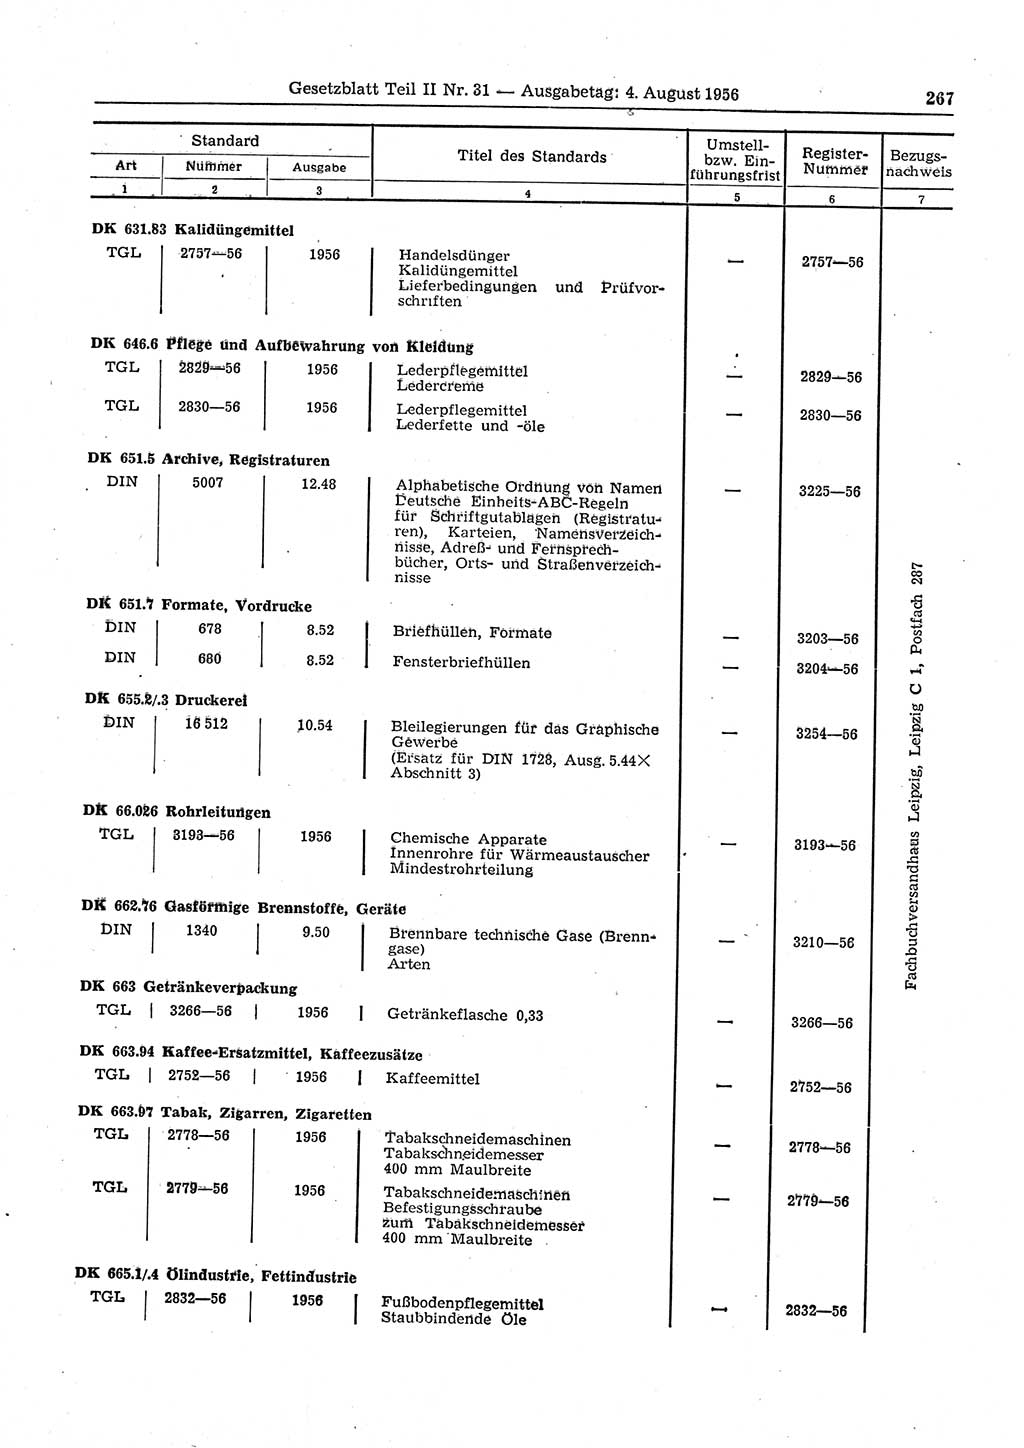 Gesetzblatt (GBl.) der Deutschen Demokratischen Republik (DDR) Teil ⅠⅠ 1956, Seite 267 (GBl. DDR ⅠⅠ 1956, S. 267)